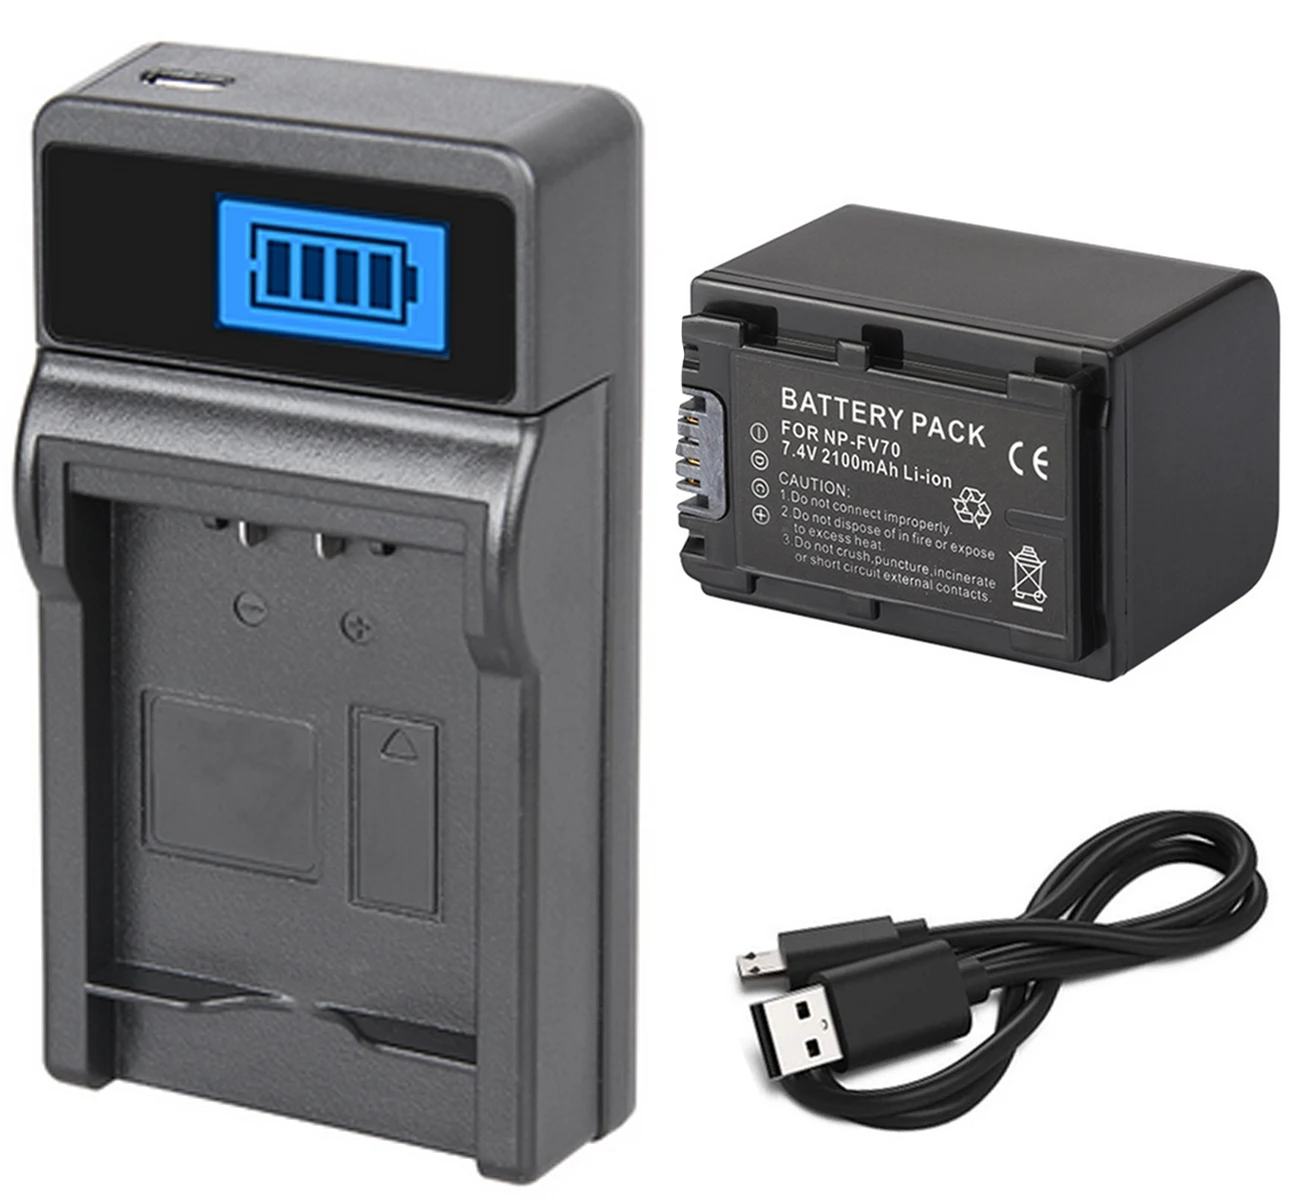 Батарея упаковке с открытыми порами+ ЖК-дисплей USB Зарядное устройство для sony NP-FV30, NP-FV50, NP-FV50A, NP-FV70, NP-FV70A, NP-FV100, NP-FV100A InfoLithium V серии - Color: Battery and ChargerC